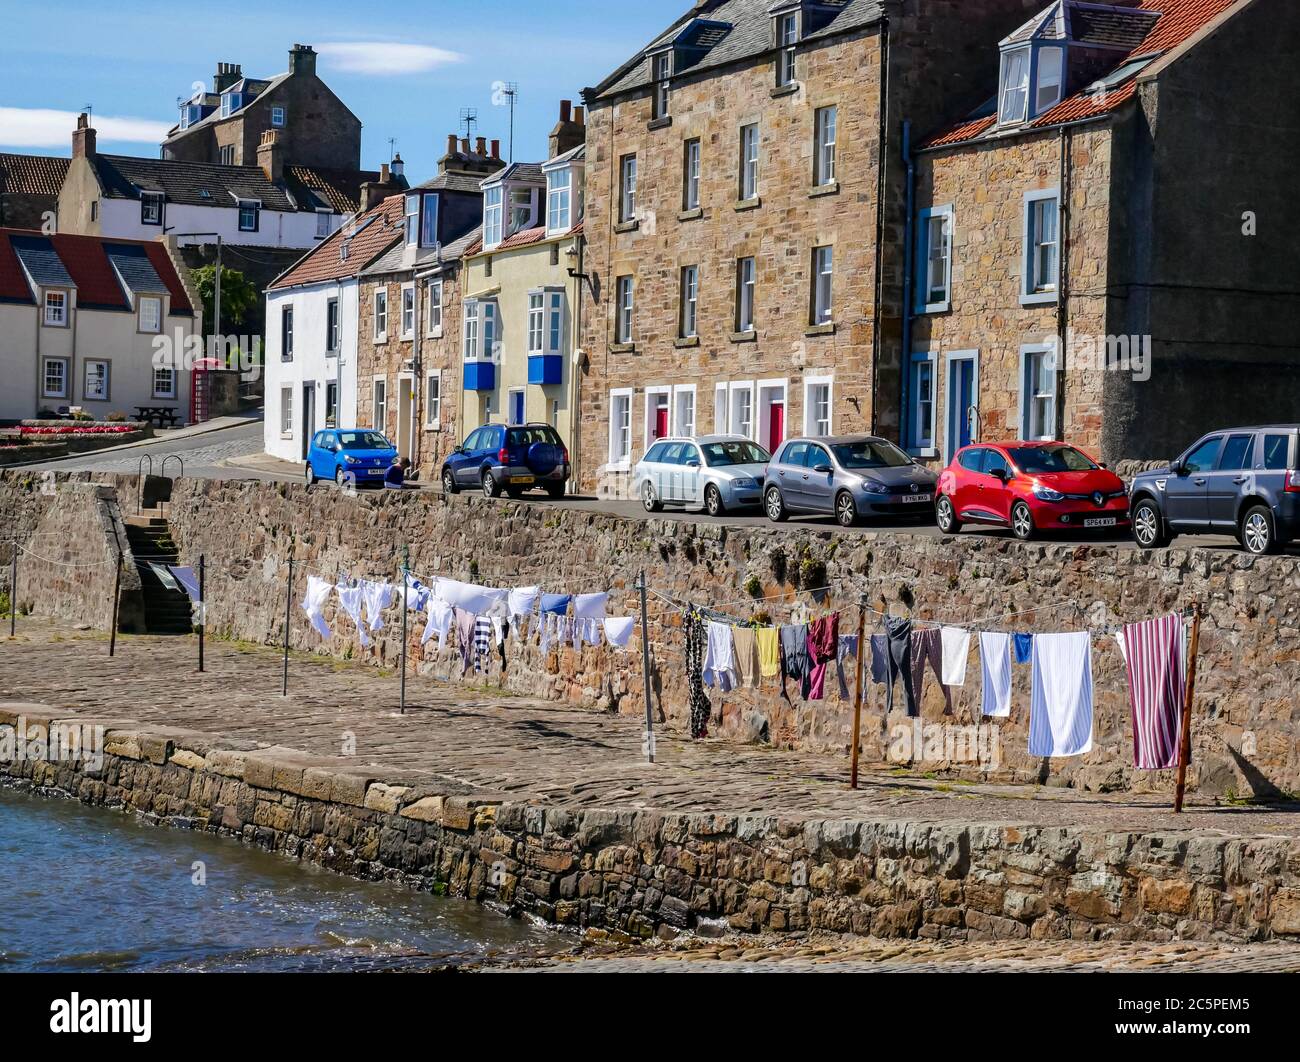 Lavage suspendu pour sécher sur des vêtements communaux dans le port, Anstruther, Fife, Écosse, Royaume-Uni Banque D'Images